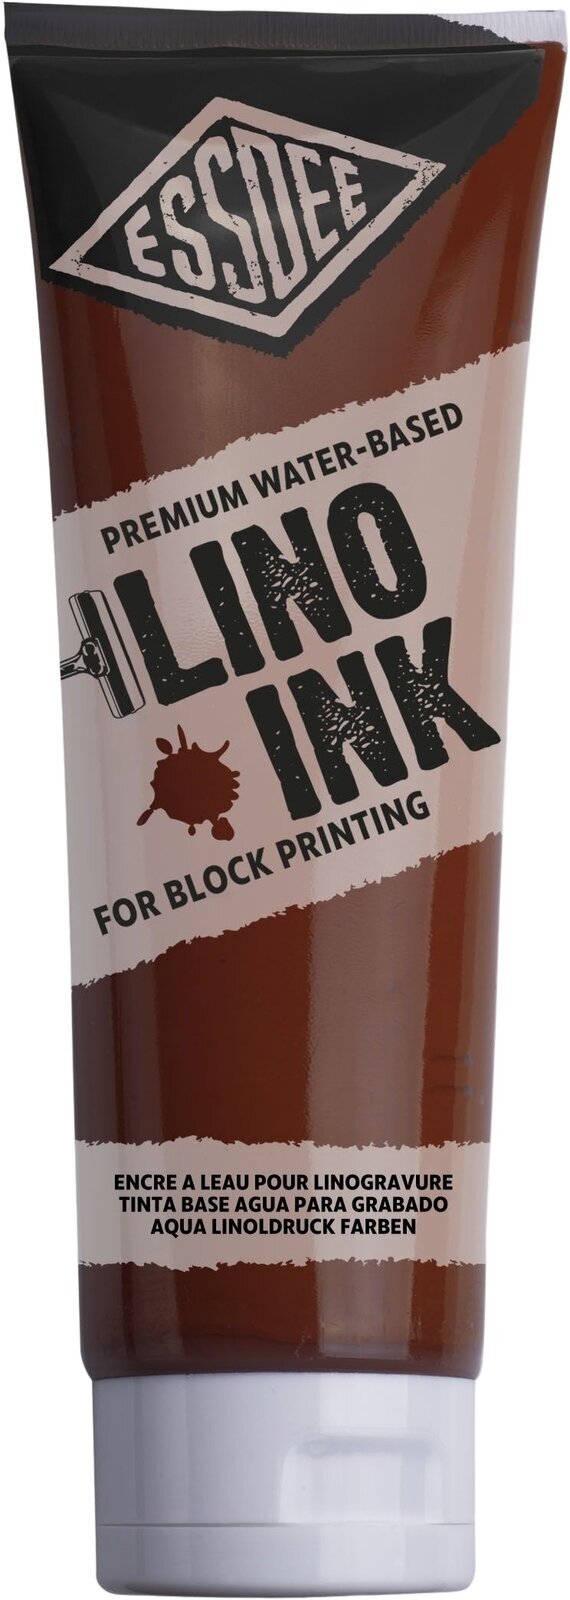 Tinta para linogravura Essdee Block Printing Ink Tinta para linogravura Burnt Sienna 300 ml